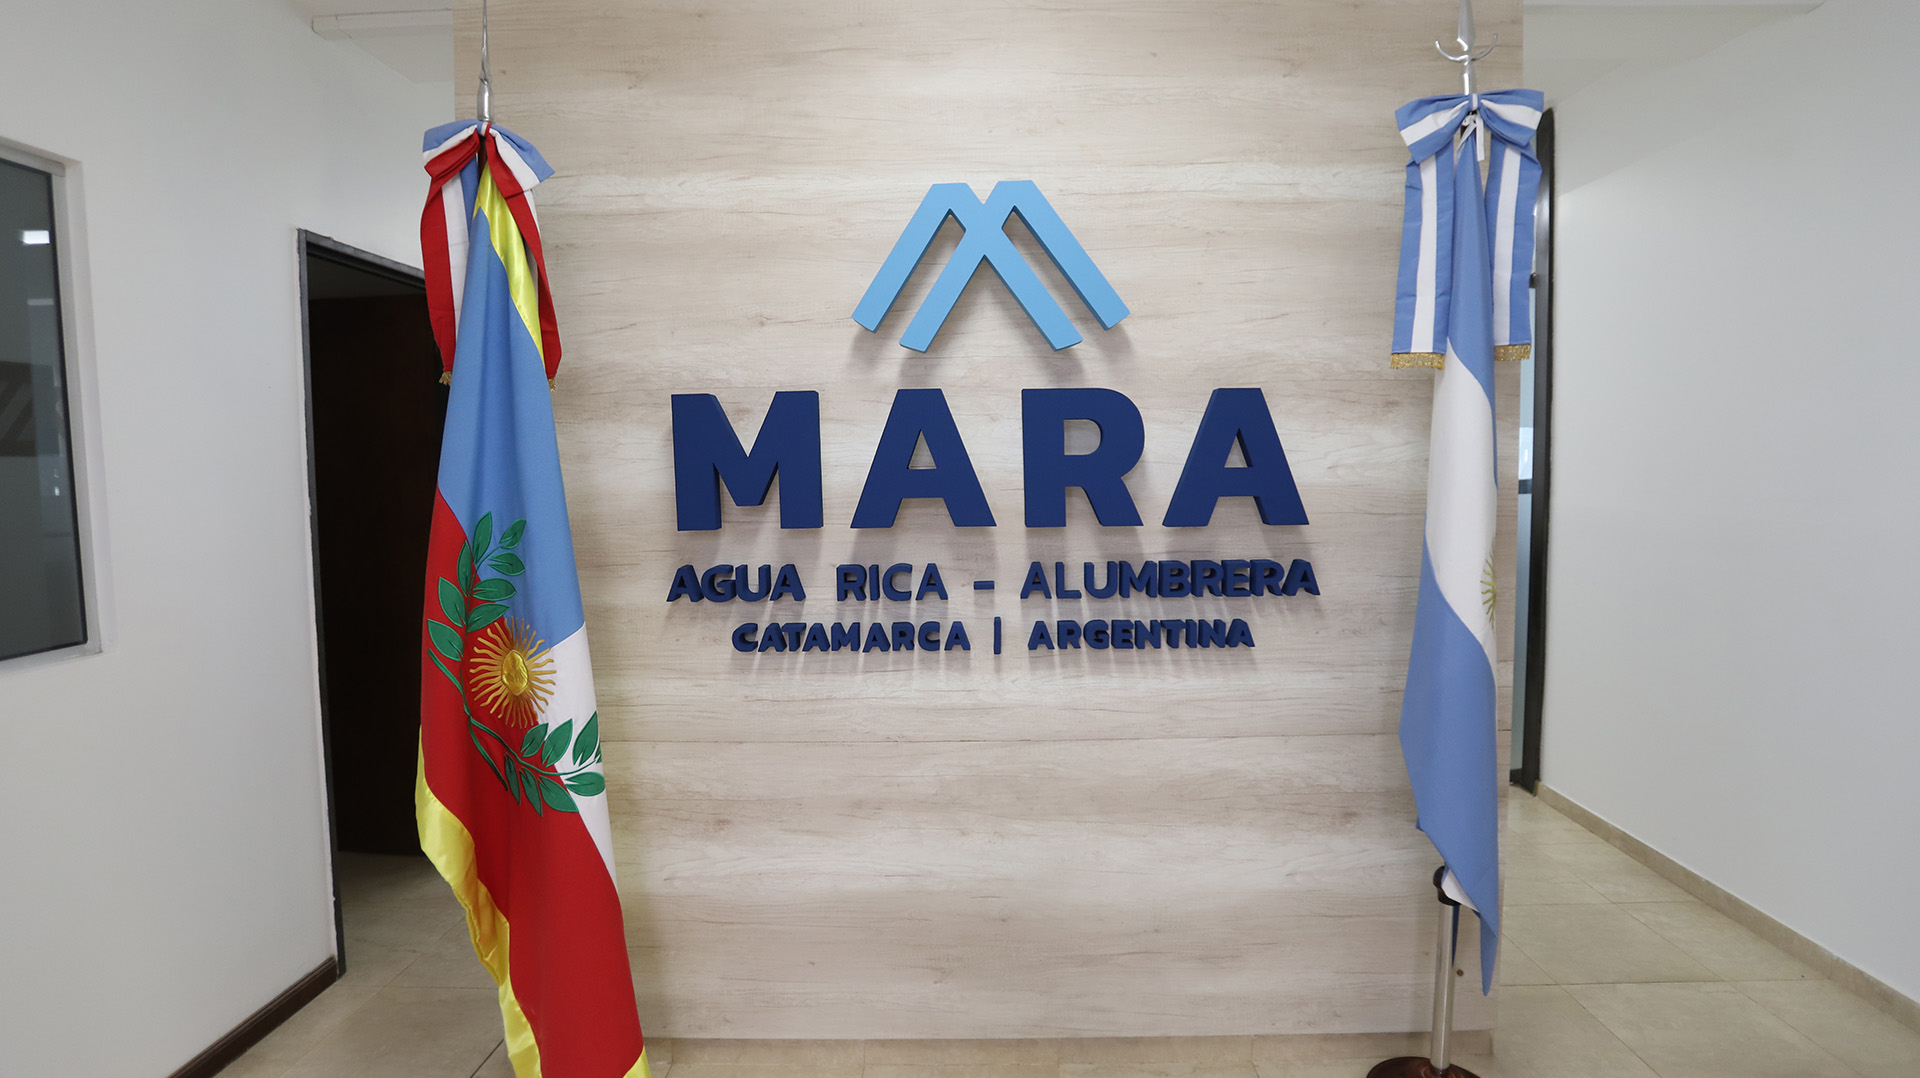 Las oficinas generales del Proyecto MARA se encuentran en la capital de Catamarca y todavía están en construcción